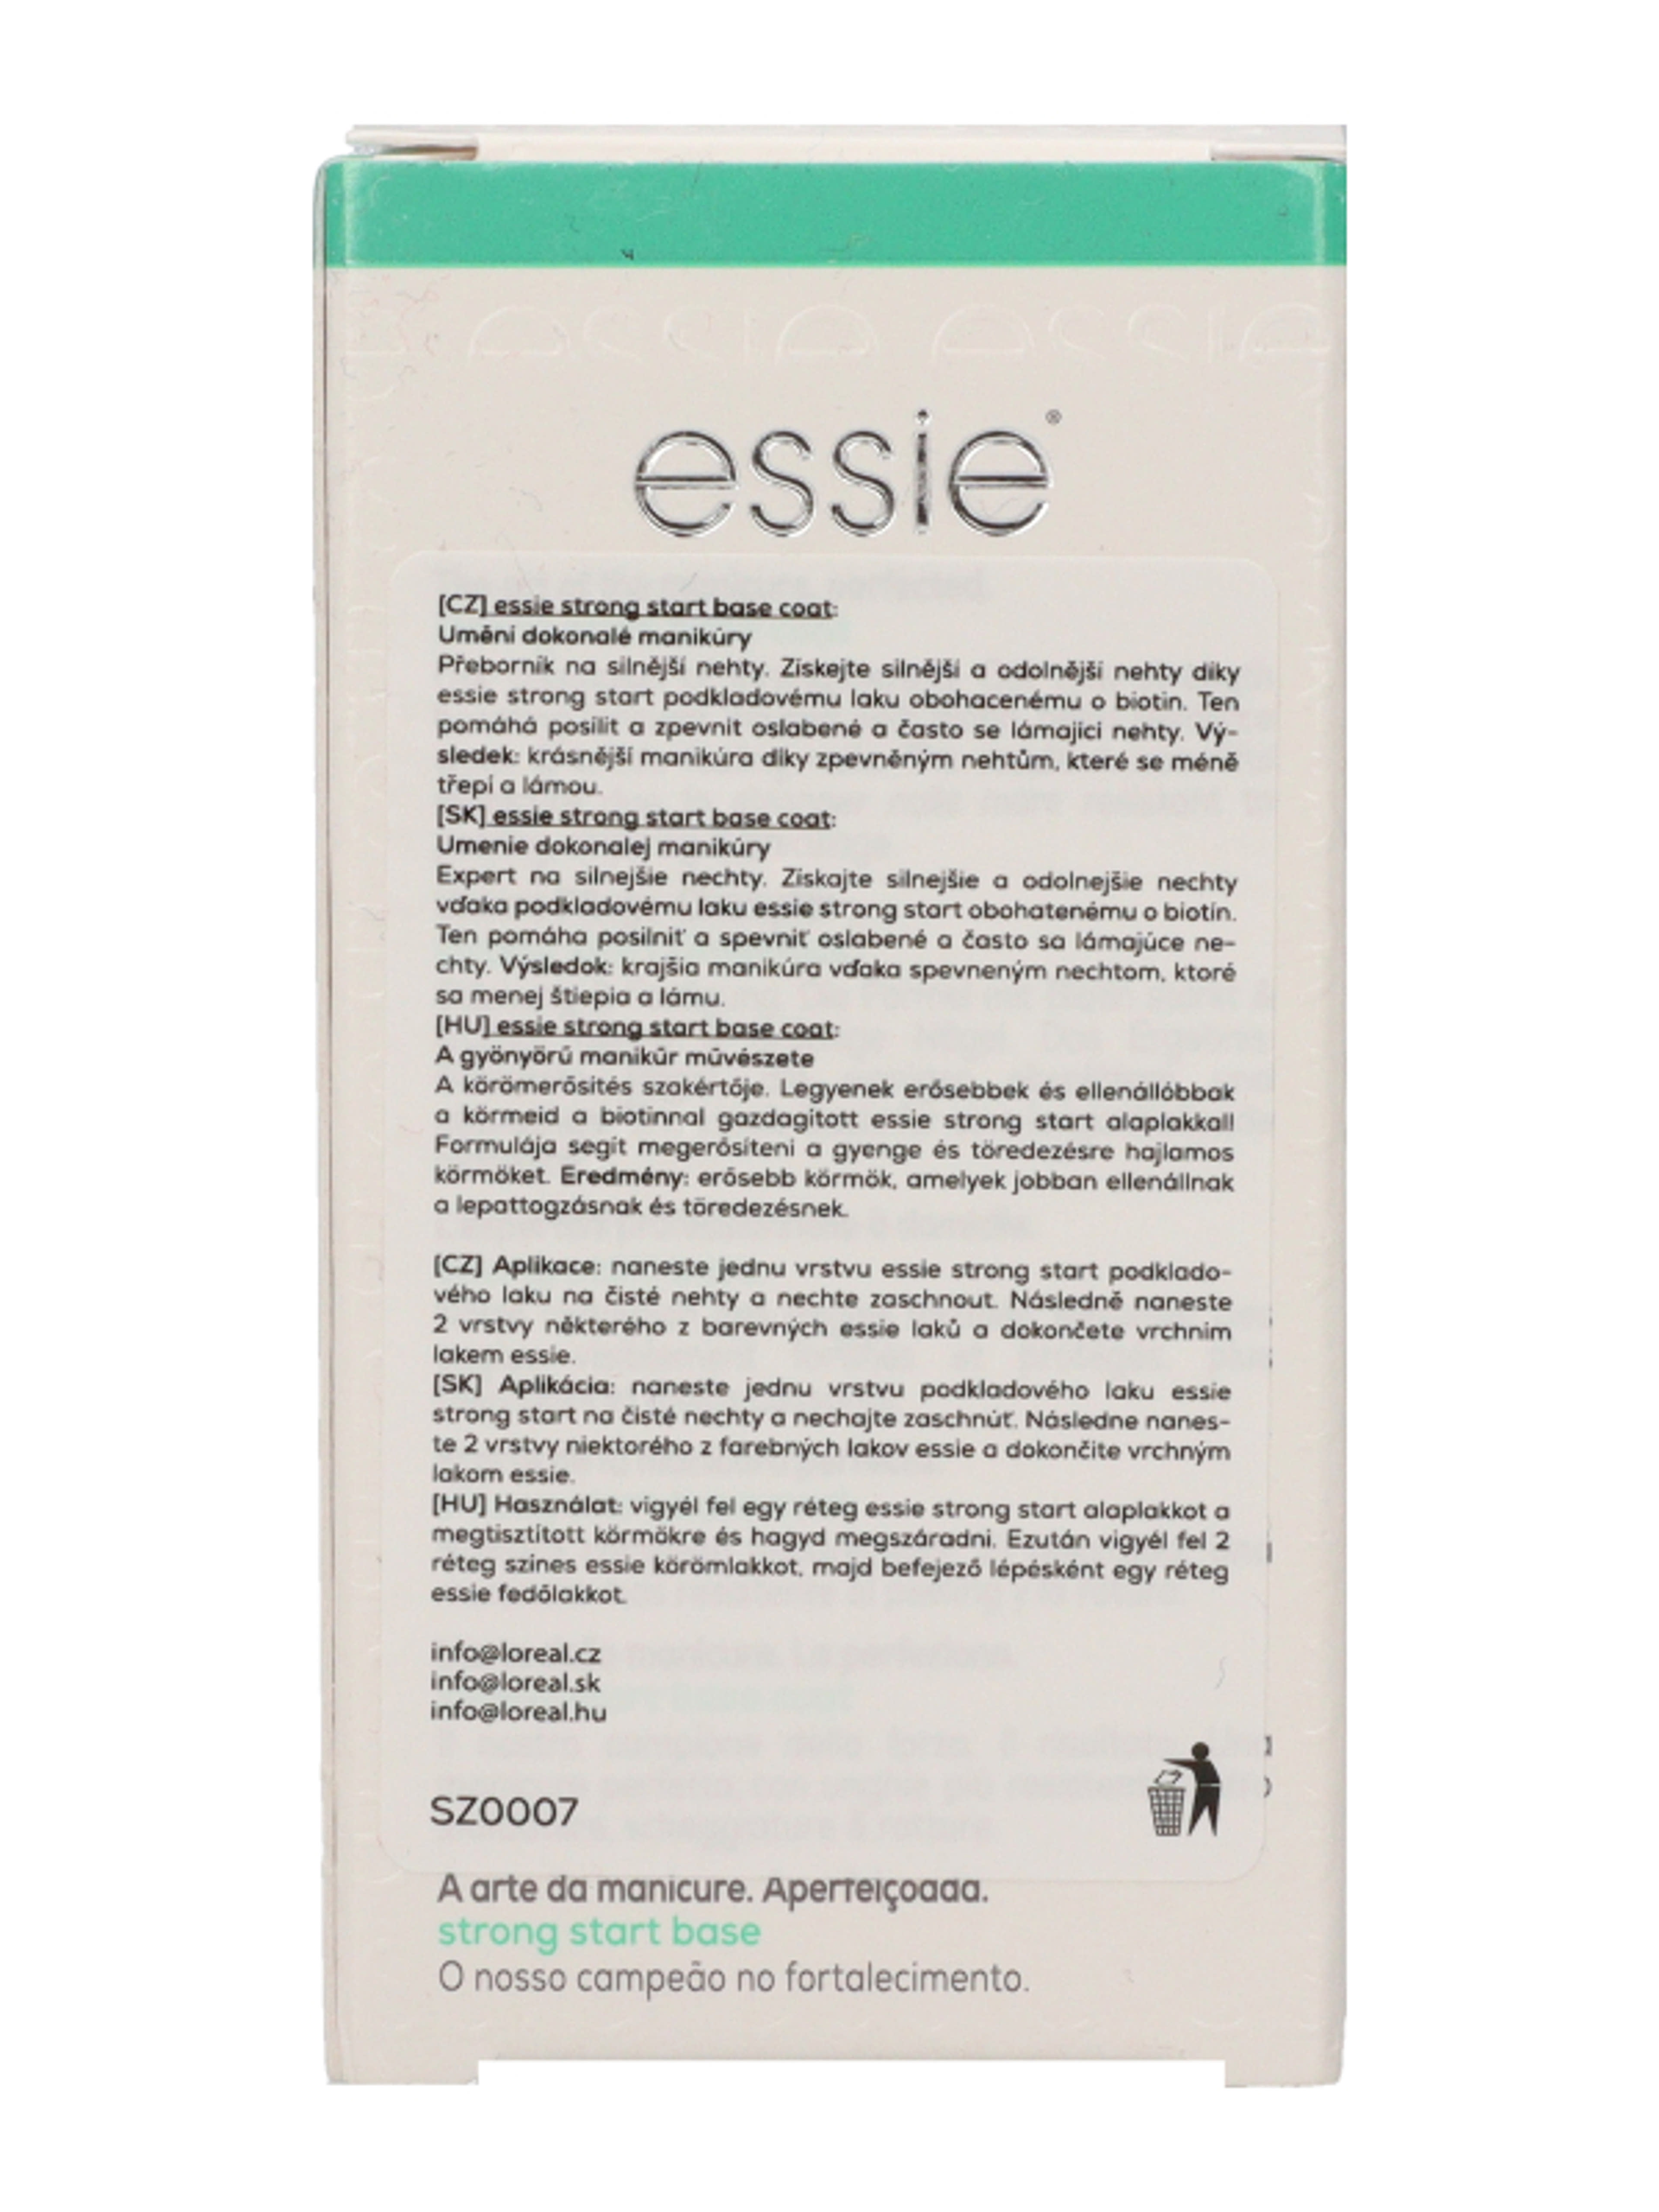 Essie Bace Coat As Strong körömerősítő - 1 db-4